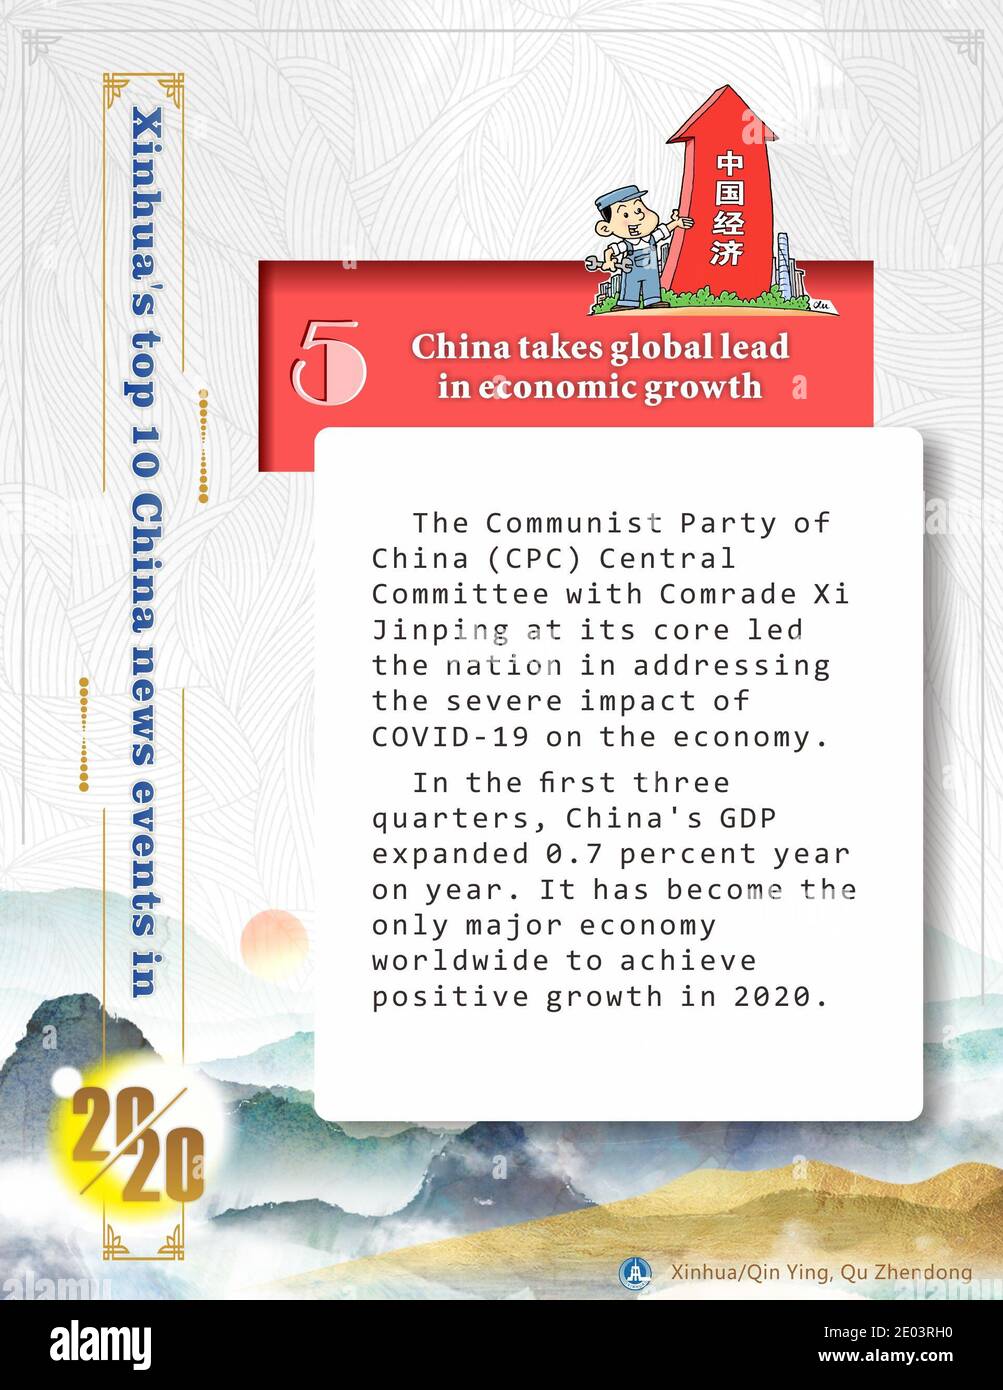 Peking, China. Dezember 2020. Das Zentralkomitee der Kommunistischen Partei Chinas (KPCh) mit dem Genossen Xi Jinping im Kern führte die Nation an, die schweren Auswirkungen der COVID-19 auf die Wirtschaft anzugehen. In den ersten drei Quartalen stieg das chinesische BIP um 0.7 Prozent gegenüber dem Vorjahr. Sie ist die einzige große Volkswirtschaft weltweit, die 2020 ein positives Wachstum erzielt hat. Quelle: Zheng Yue/Xinhua/Alamy Live News Stockfoto